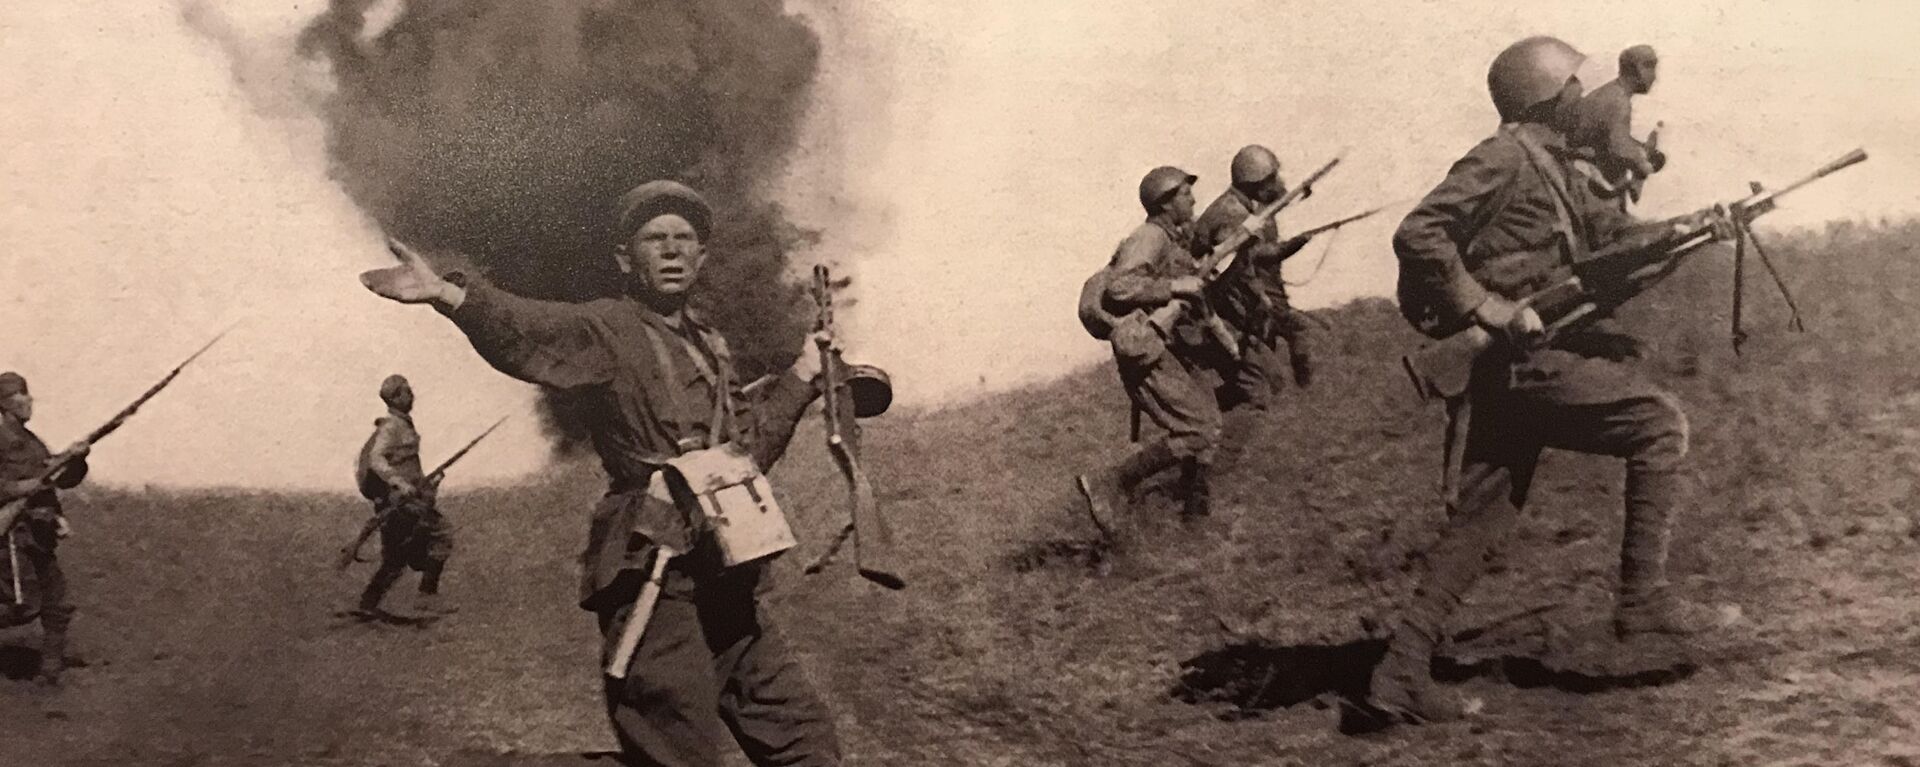 Борбена дејства Црвене армије на прилазима Стаљинграду  - Sputnik Србија, 1920, 28.01.2020